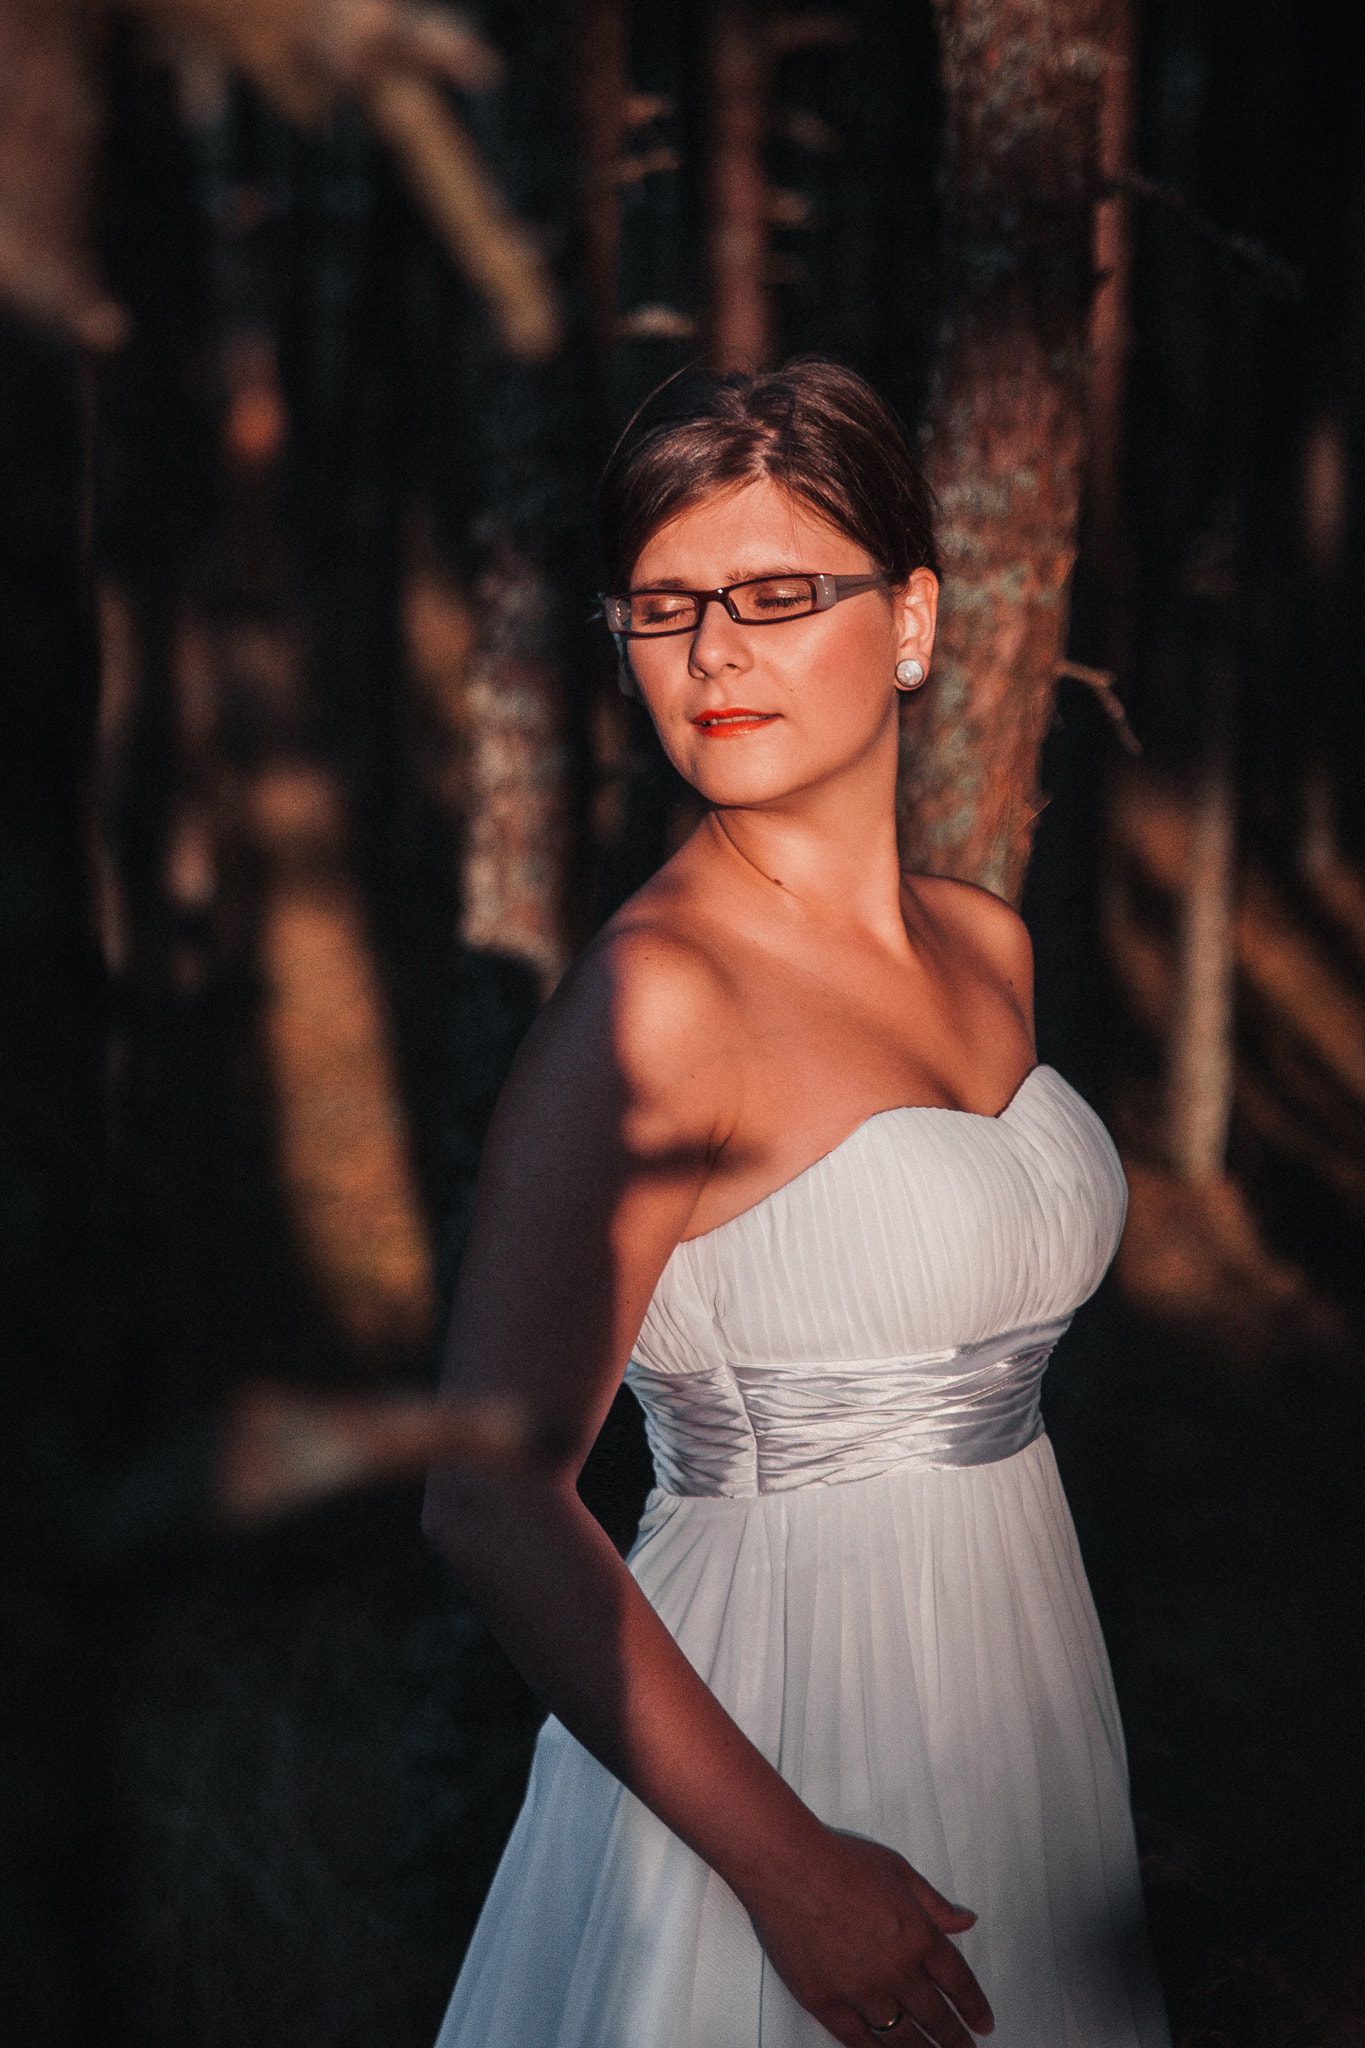 Canon EOS 50D sample photo. Bride portrait photography